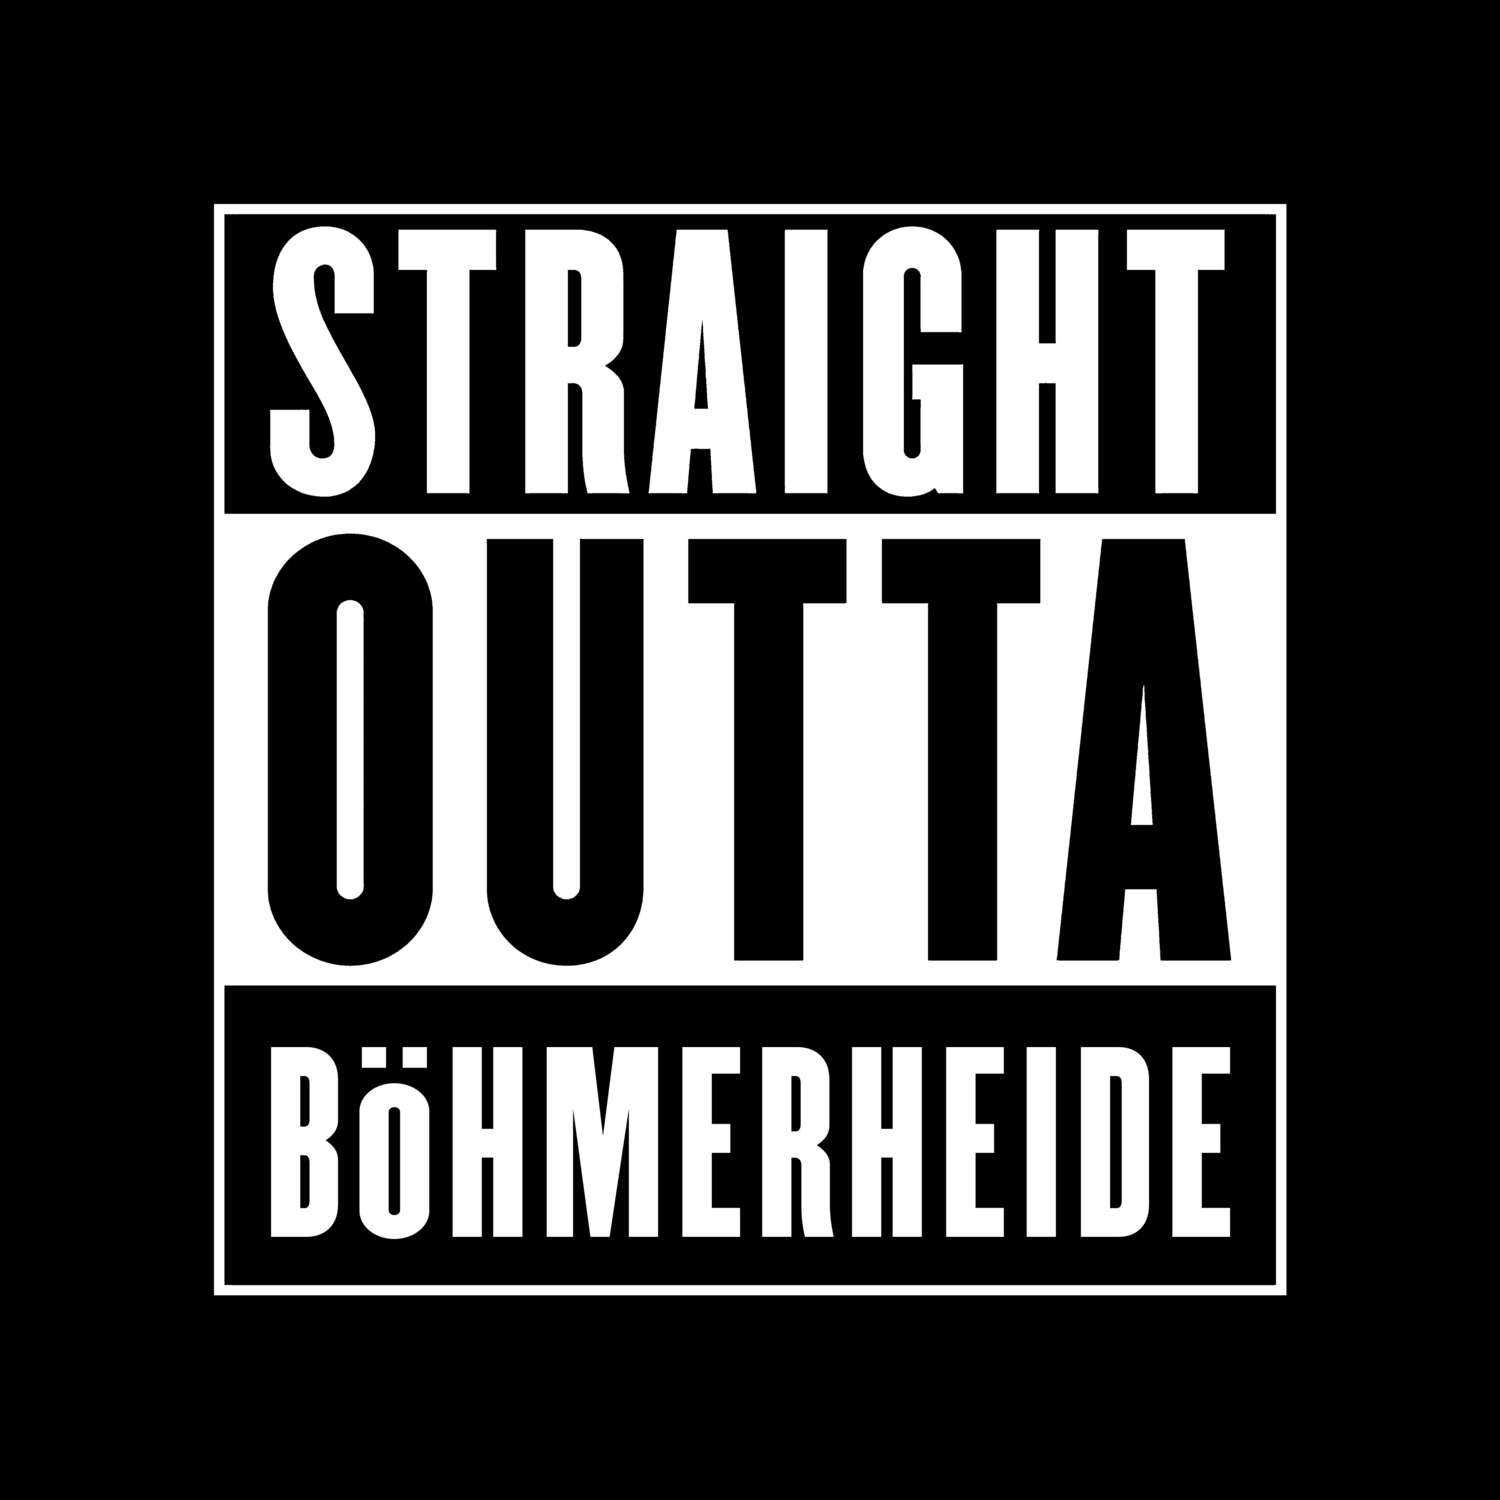 Böhmerheide T-Shirt »Straight Outta«